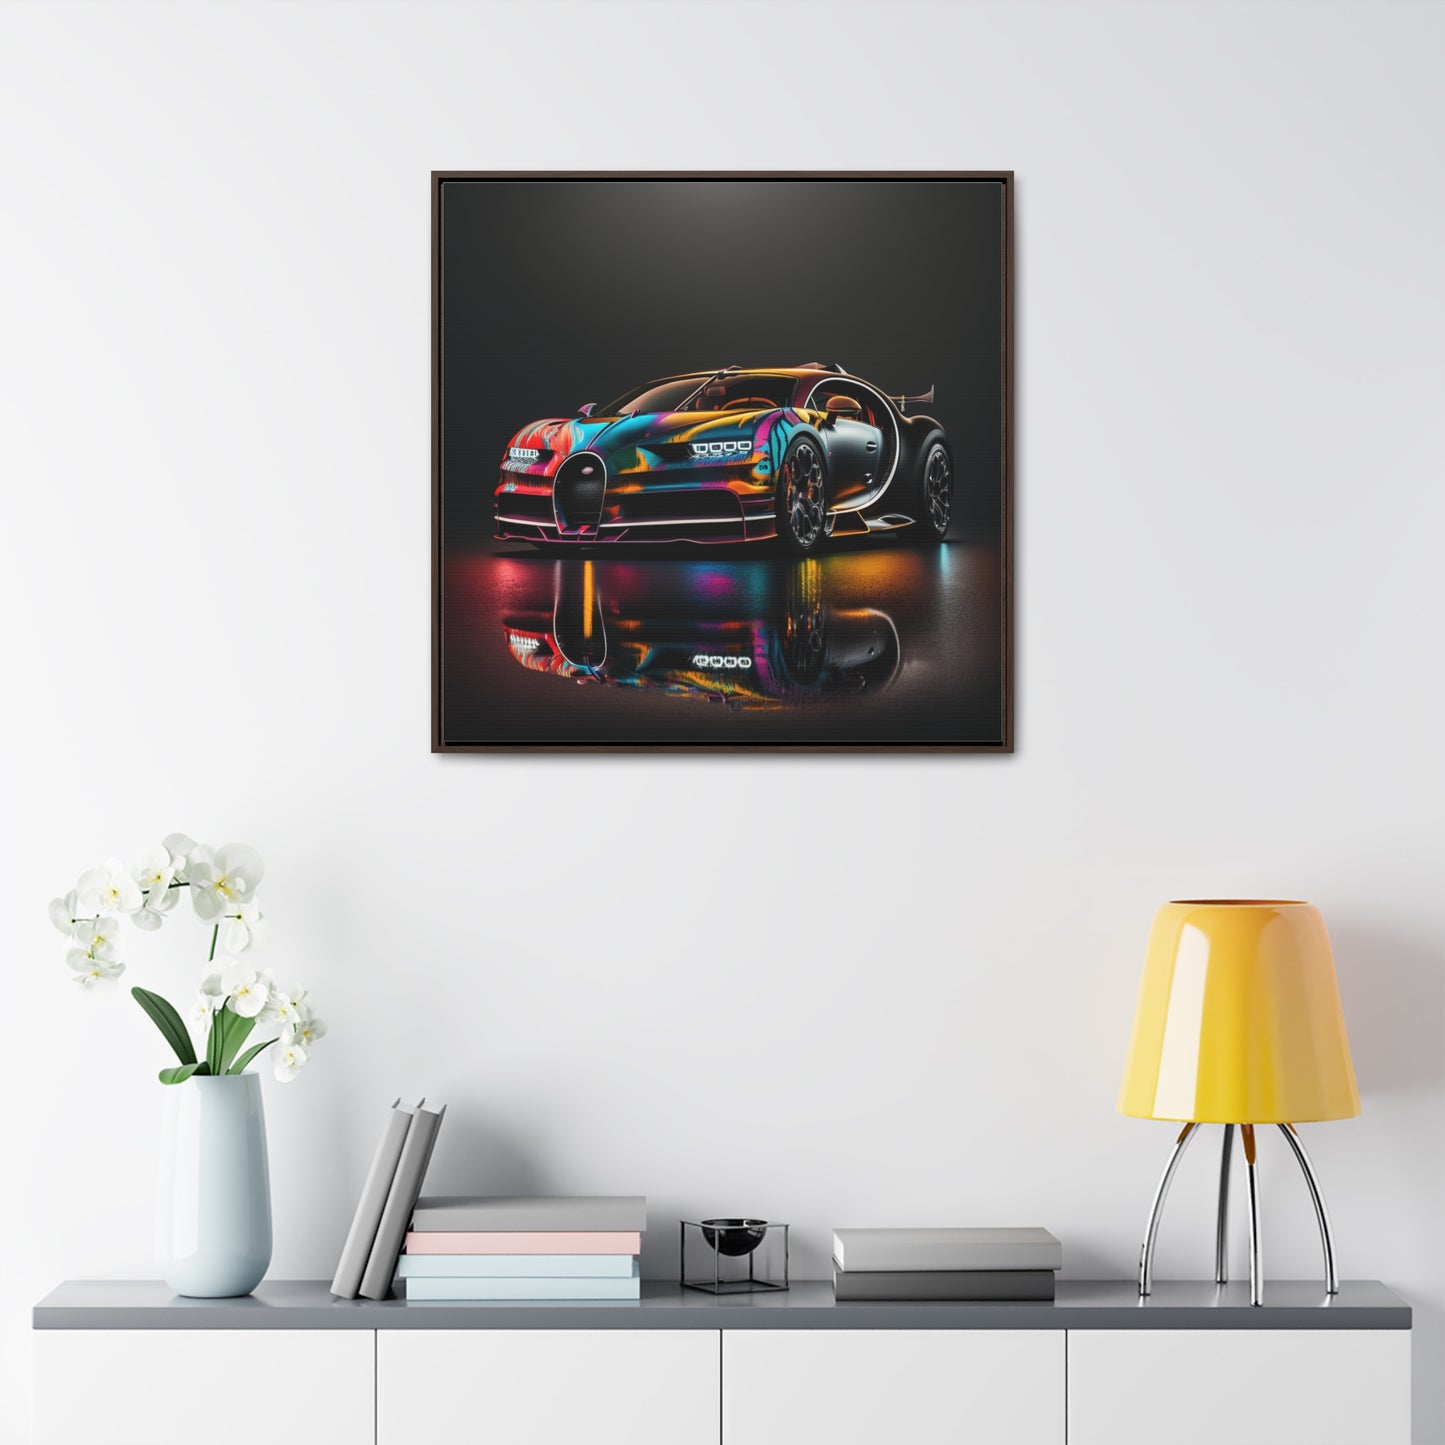 Gallery Canvas Wraps, Square Frame Bugatti Chiron Super 2